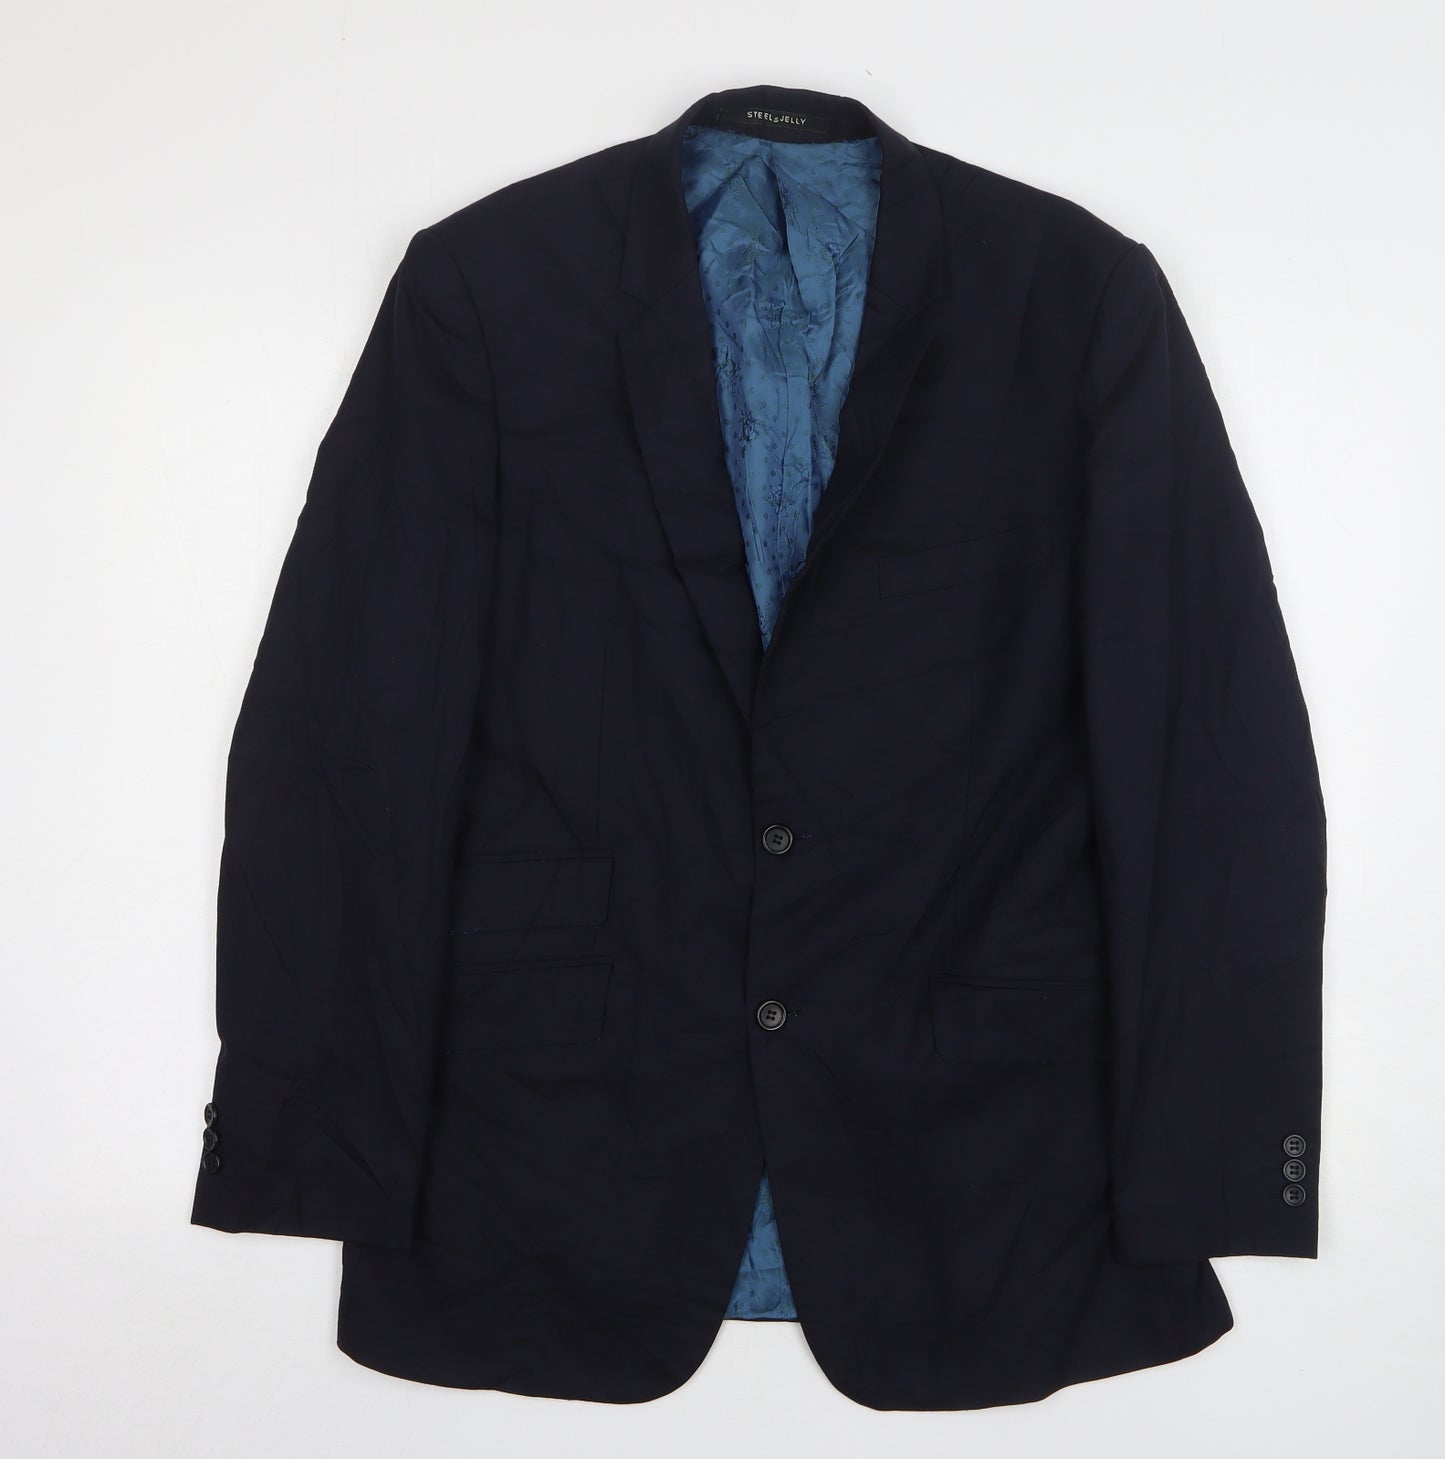 Steel & Jelly Mens Blue Wool Jacket Suit Jacket Size 40